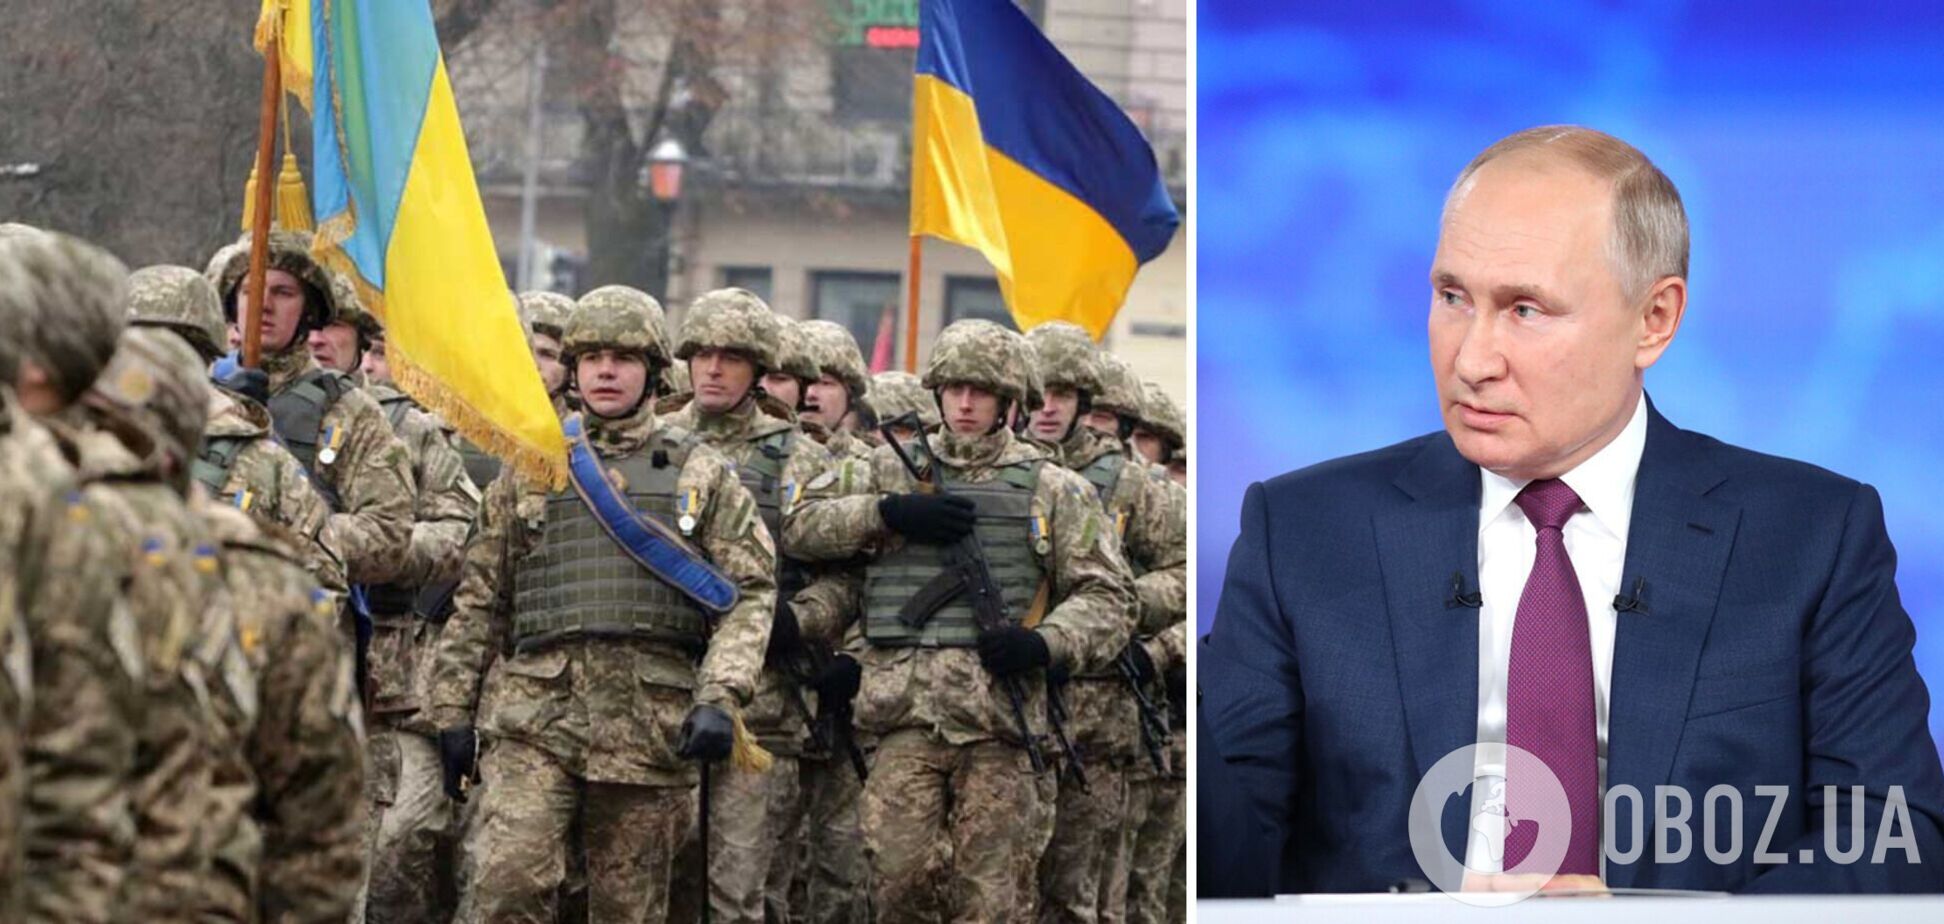 Ситуация меняется в пользу Украины: итоги конфликта Путина с Западом